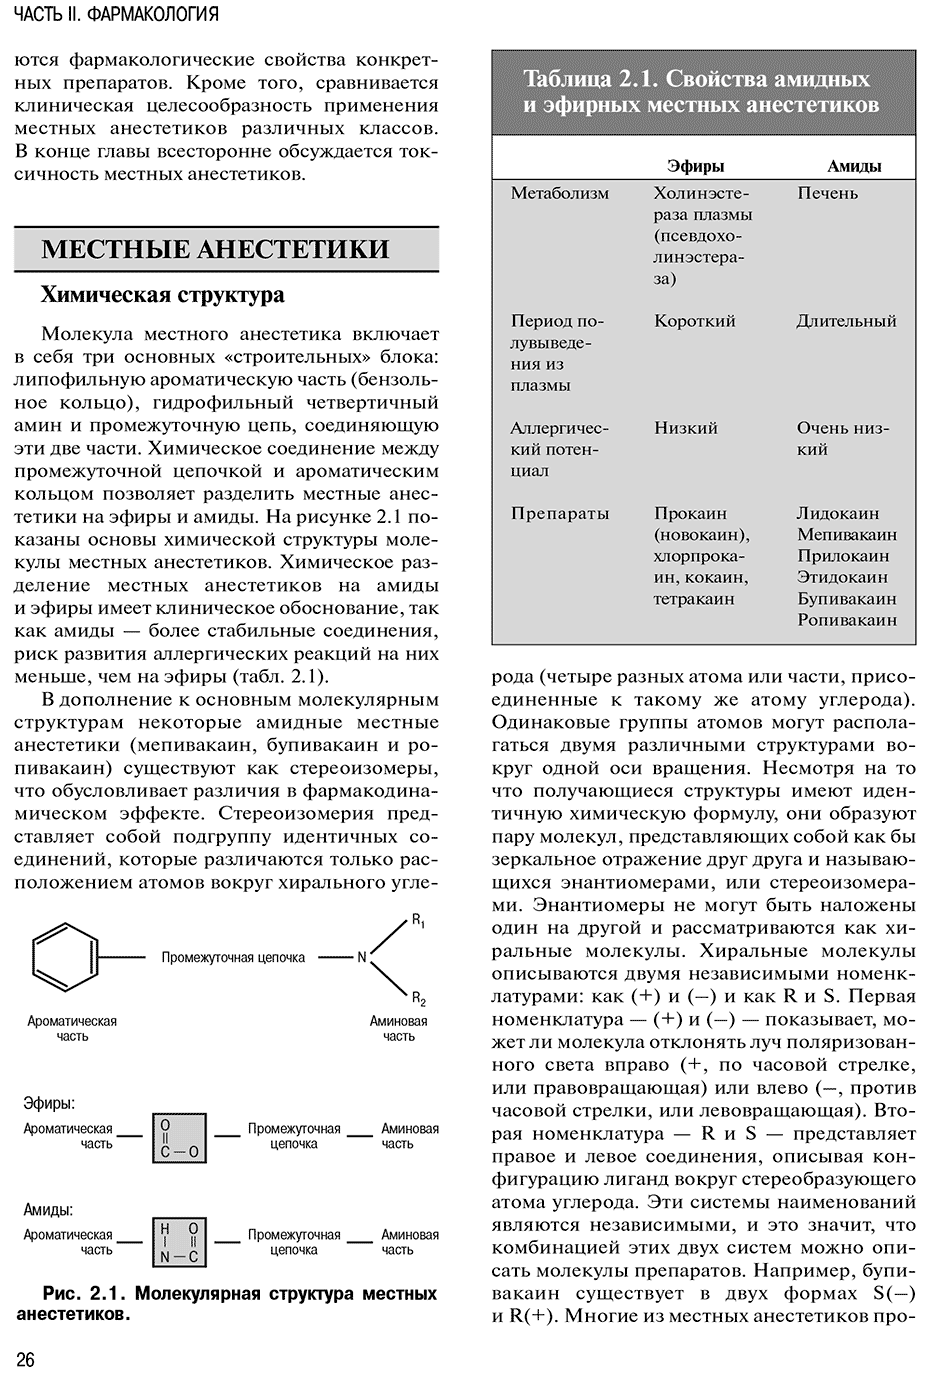 Рис. 2.1. Молекулярная структура местных анестетиков